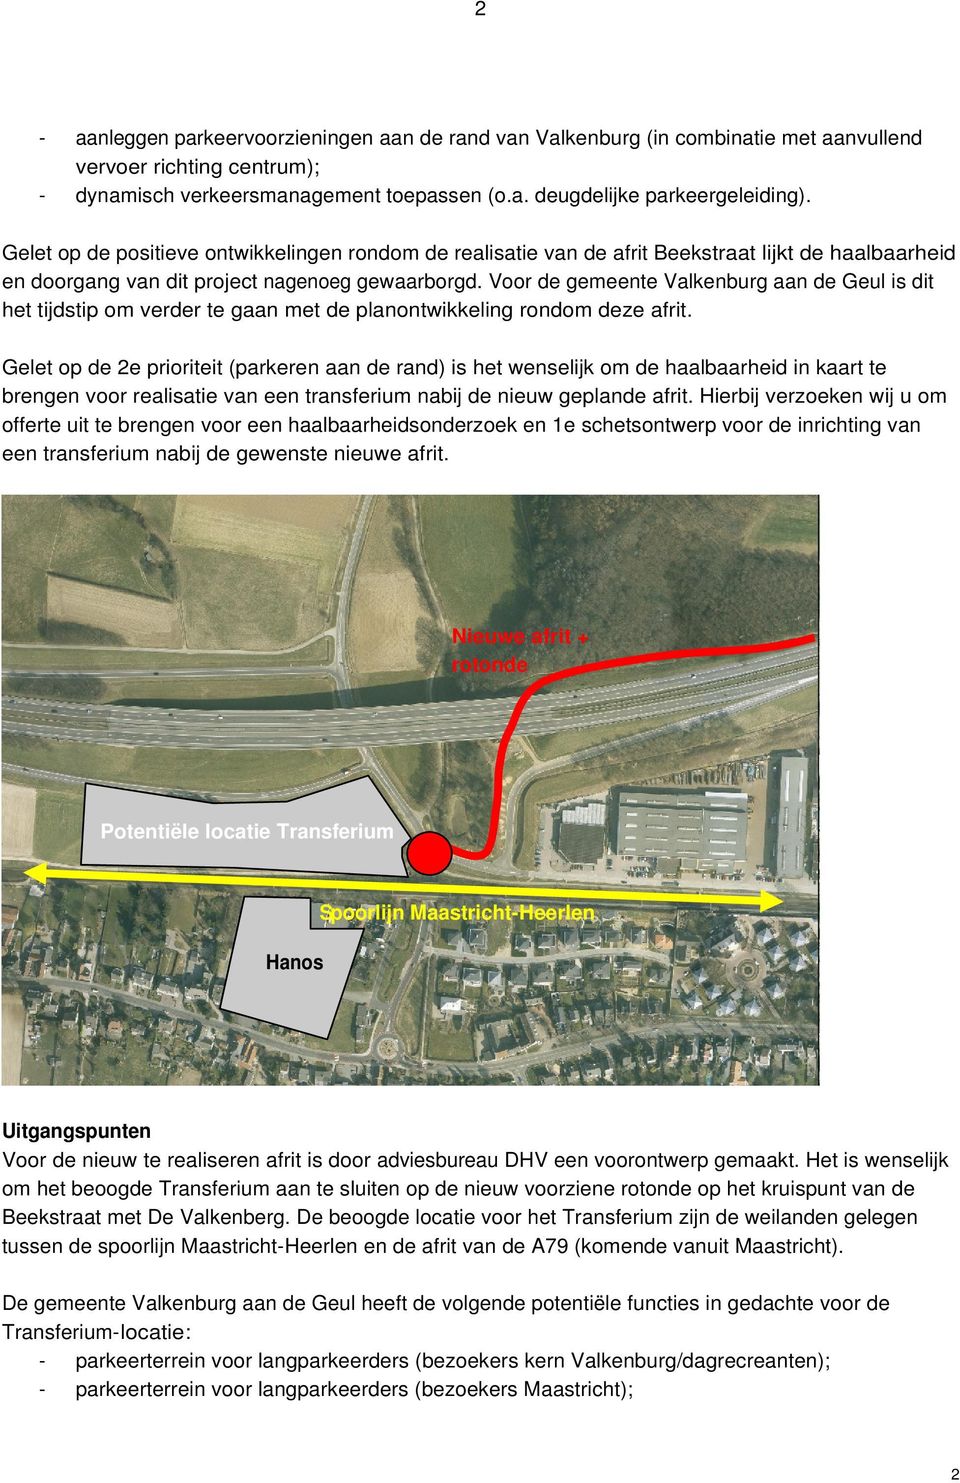 Voor de gemeente Valkenburg aan de Geul is dit het tijdstip om verder te gaan met de planontwikkeling rondom deze afrit.